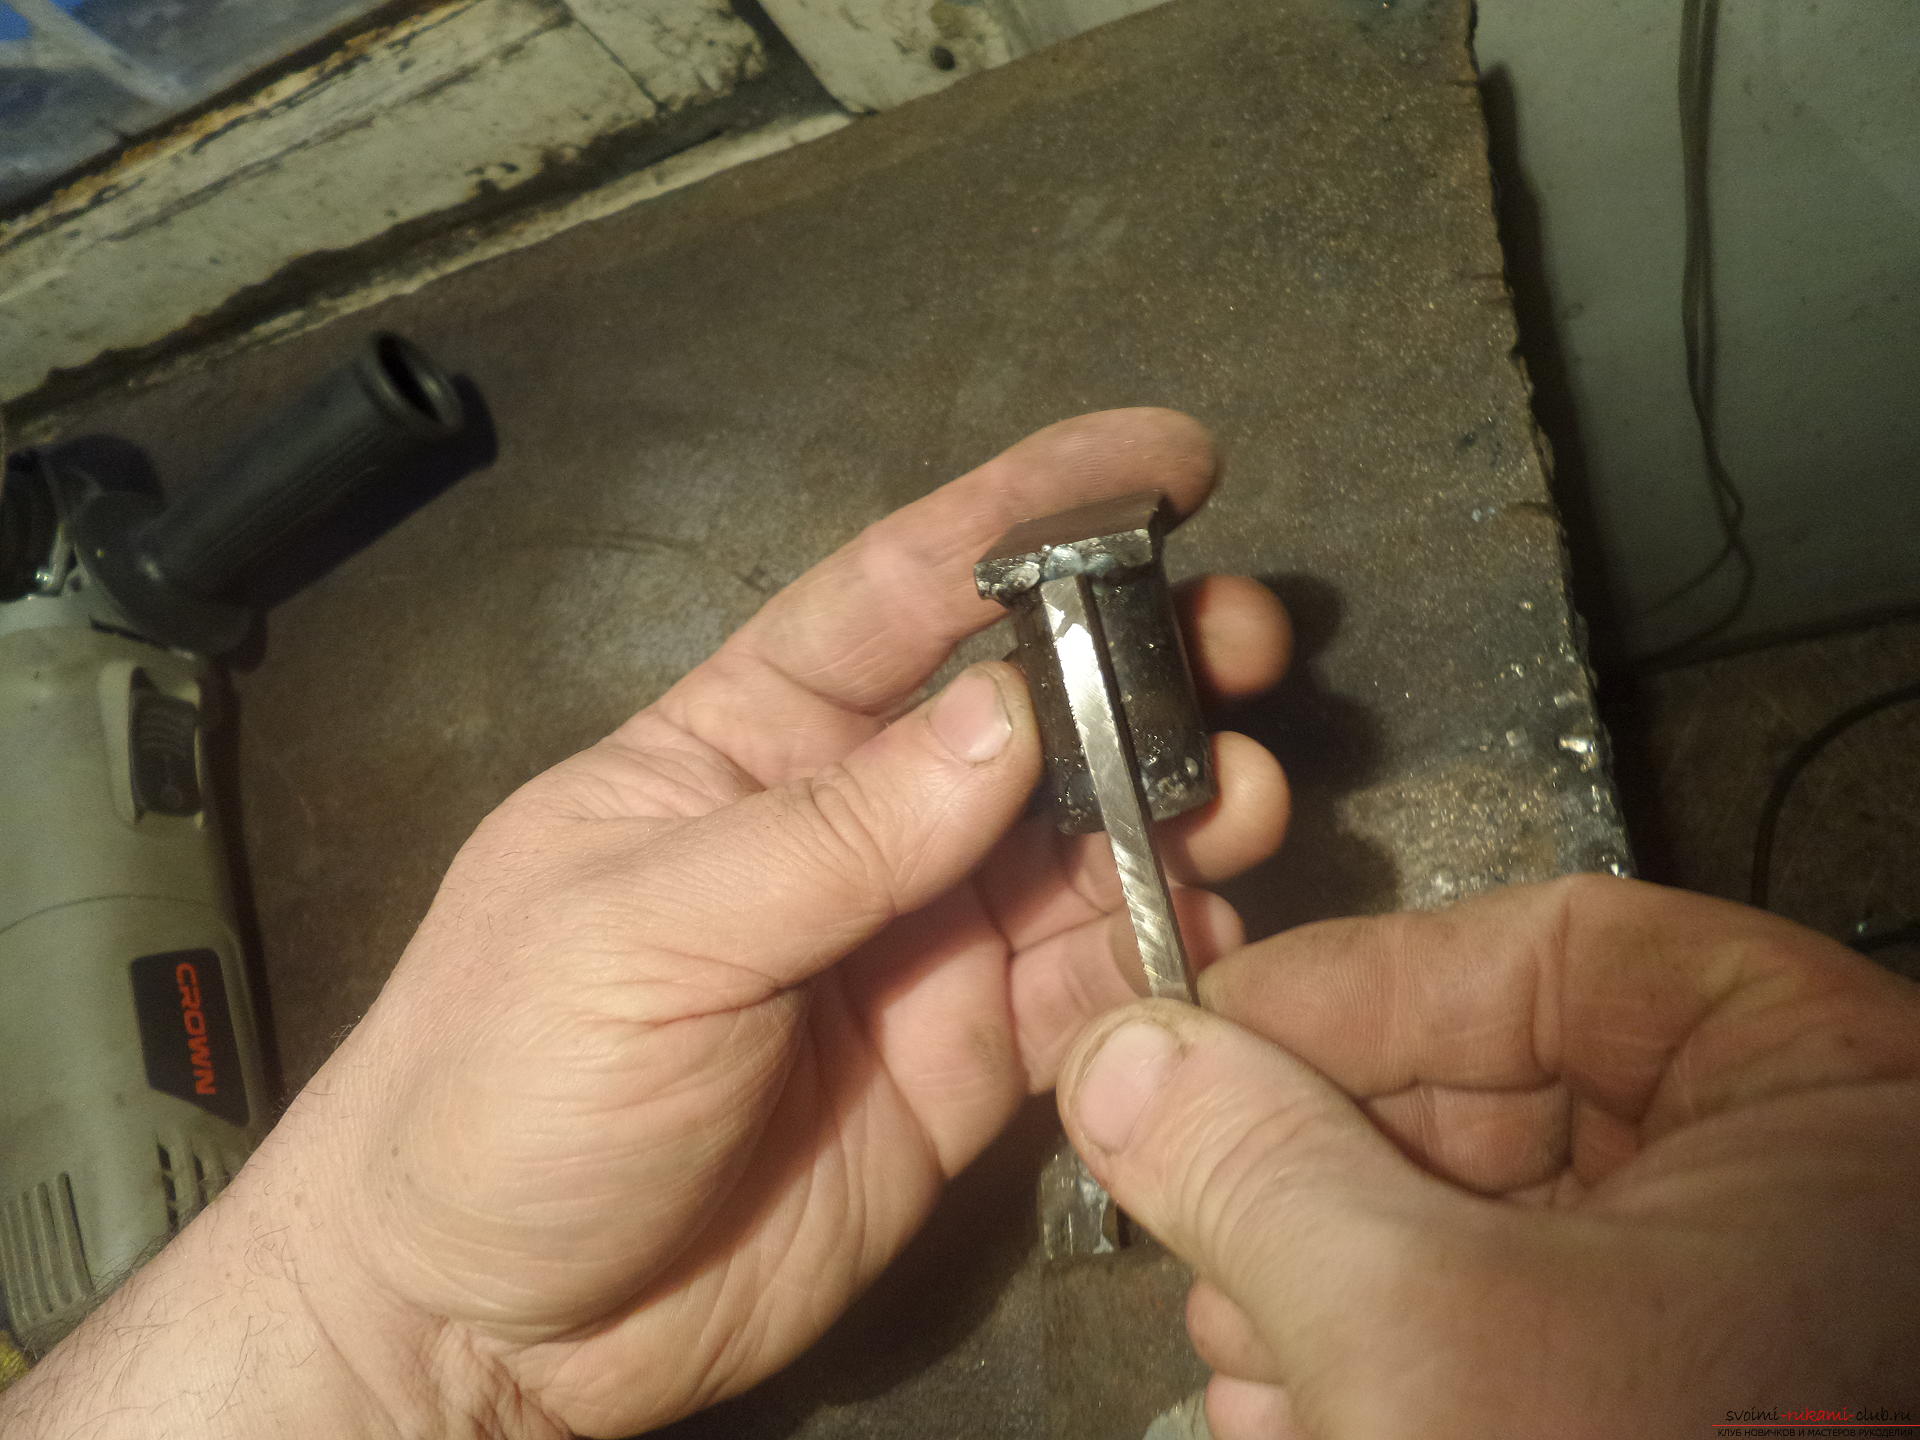 Этот мастер-класс научит как своими руками сделать необычный брелок для ключей - железный скворечник. Фото №22